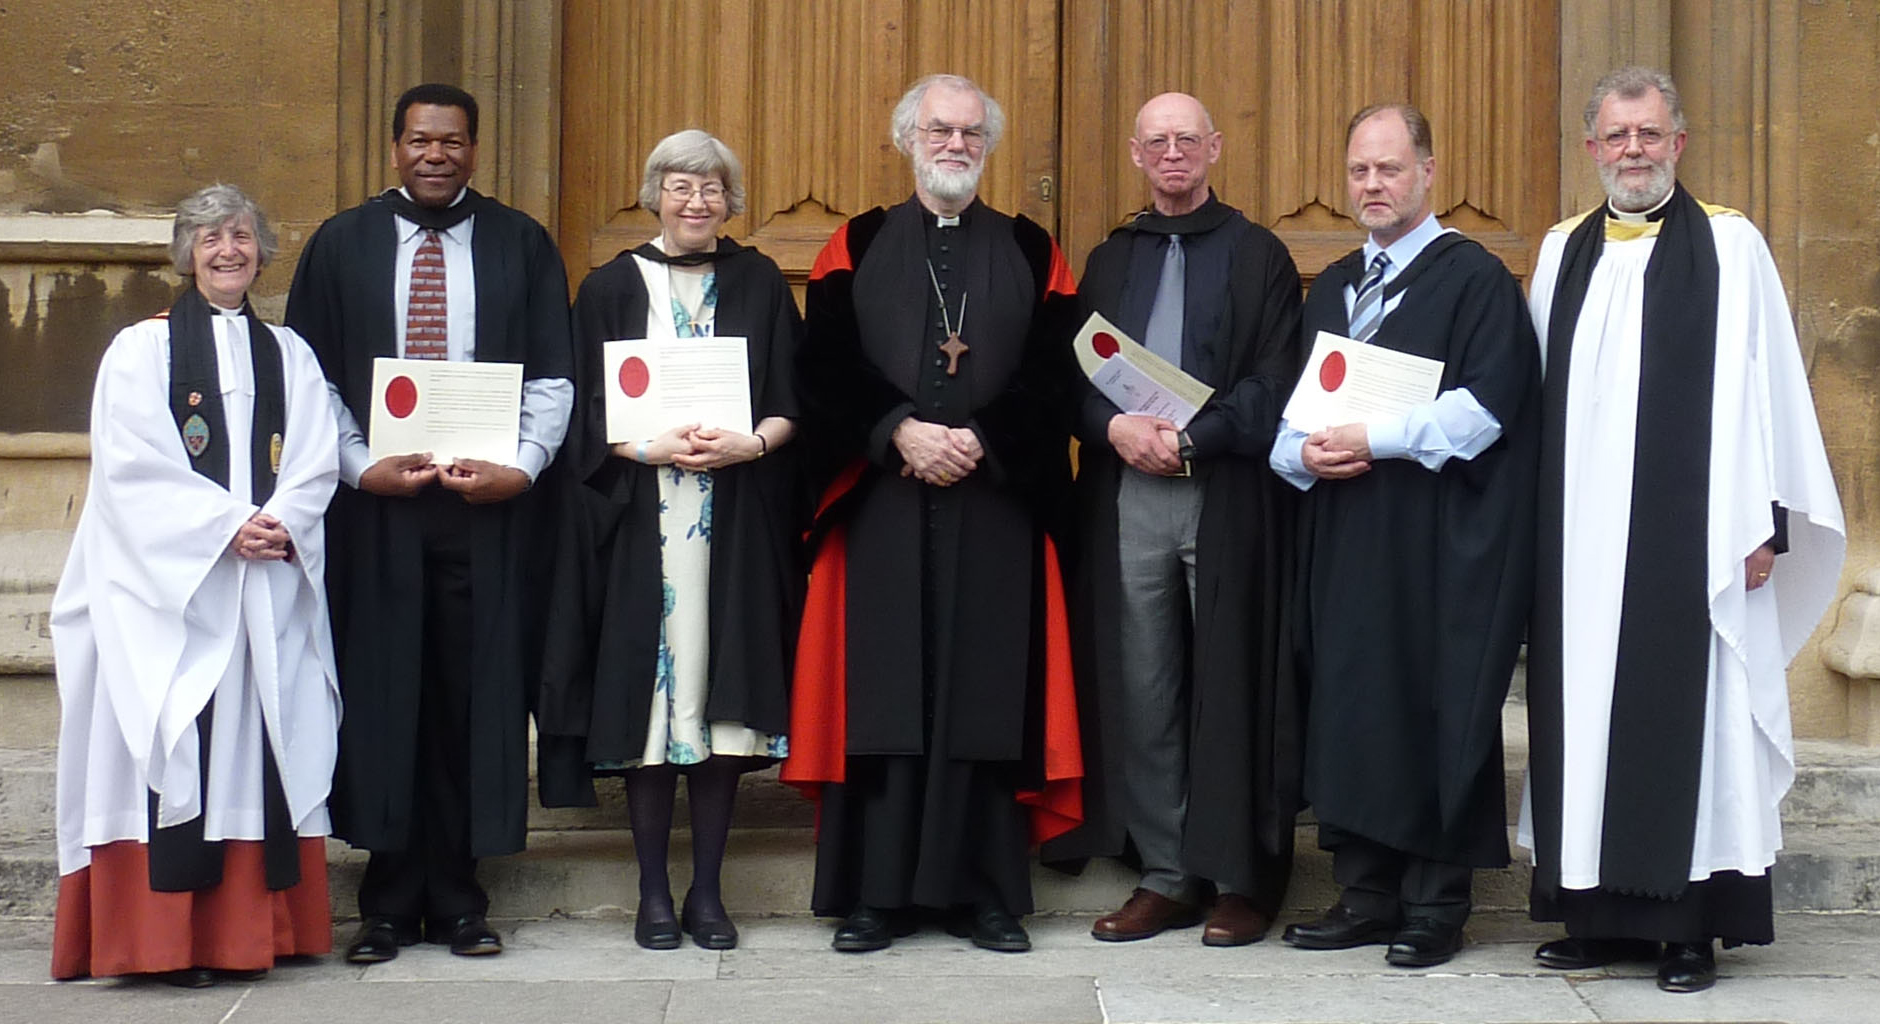 Lambeth Diploma recipients at Lambeth Palace